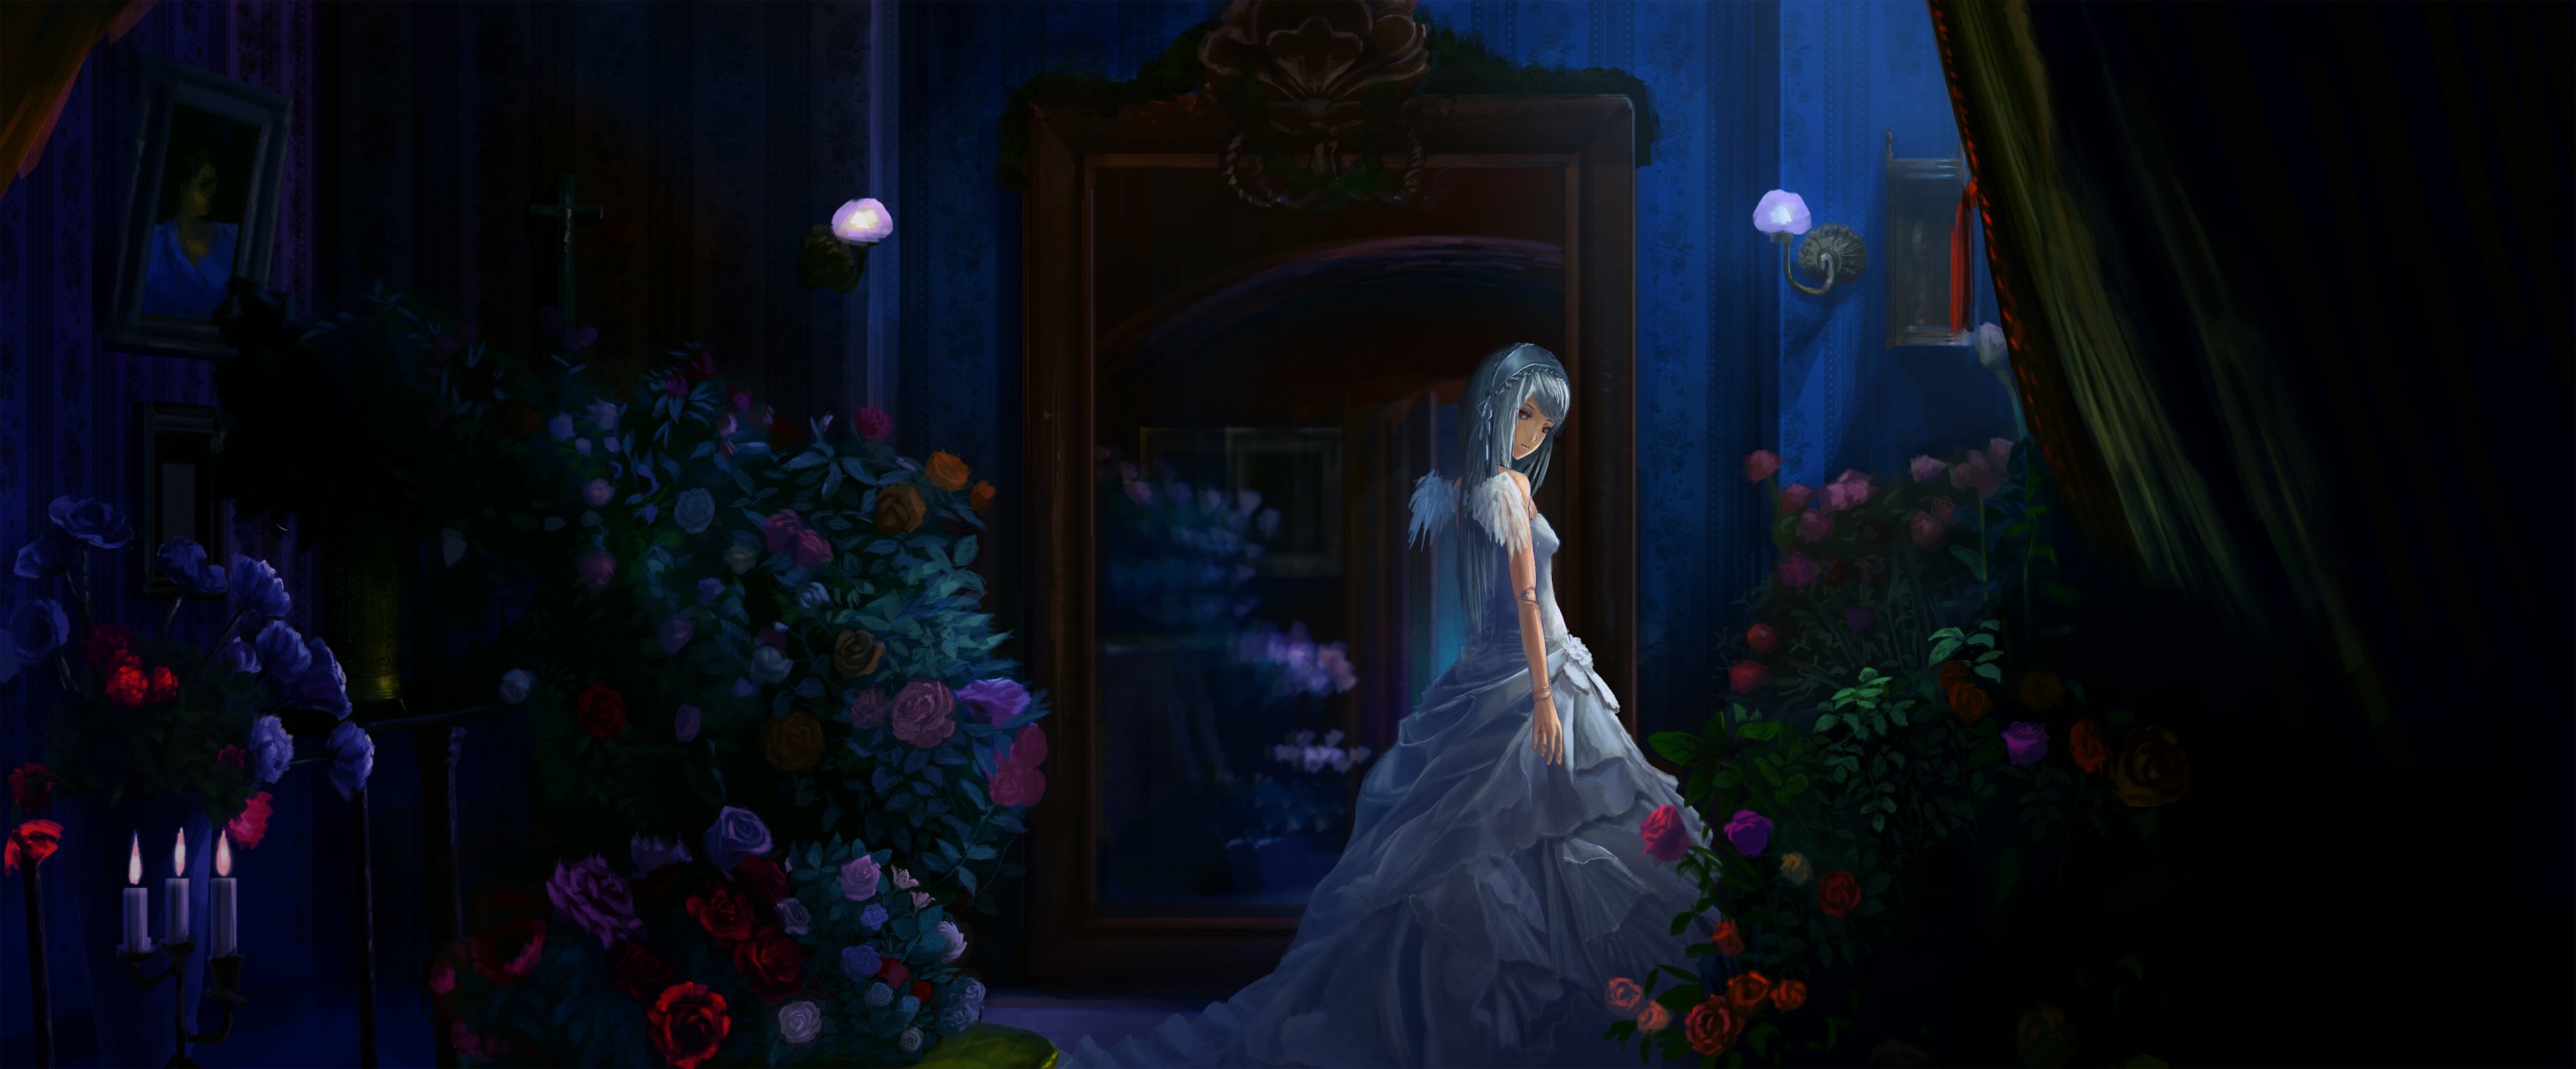 arte akibakeisena rozen maiden suigintou chica vestido habitación flores ramos alas noche aparador velas